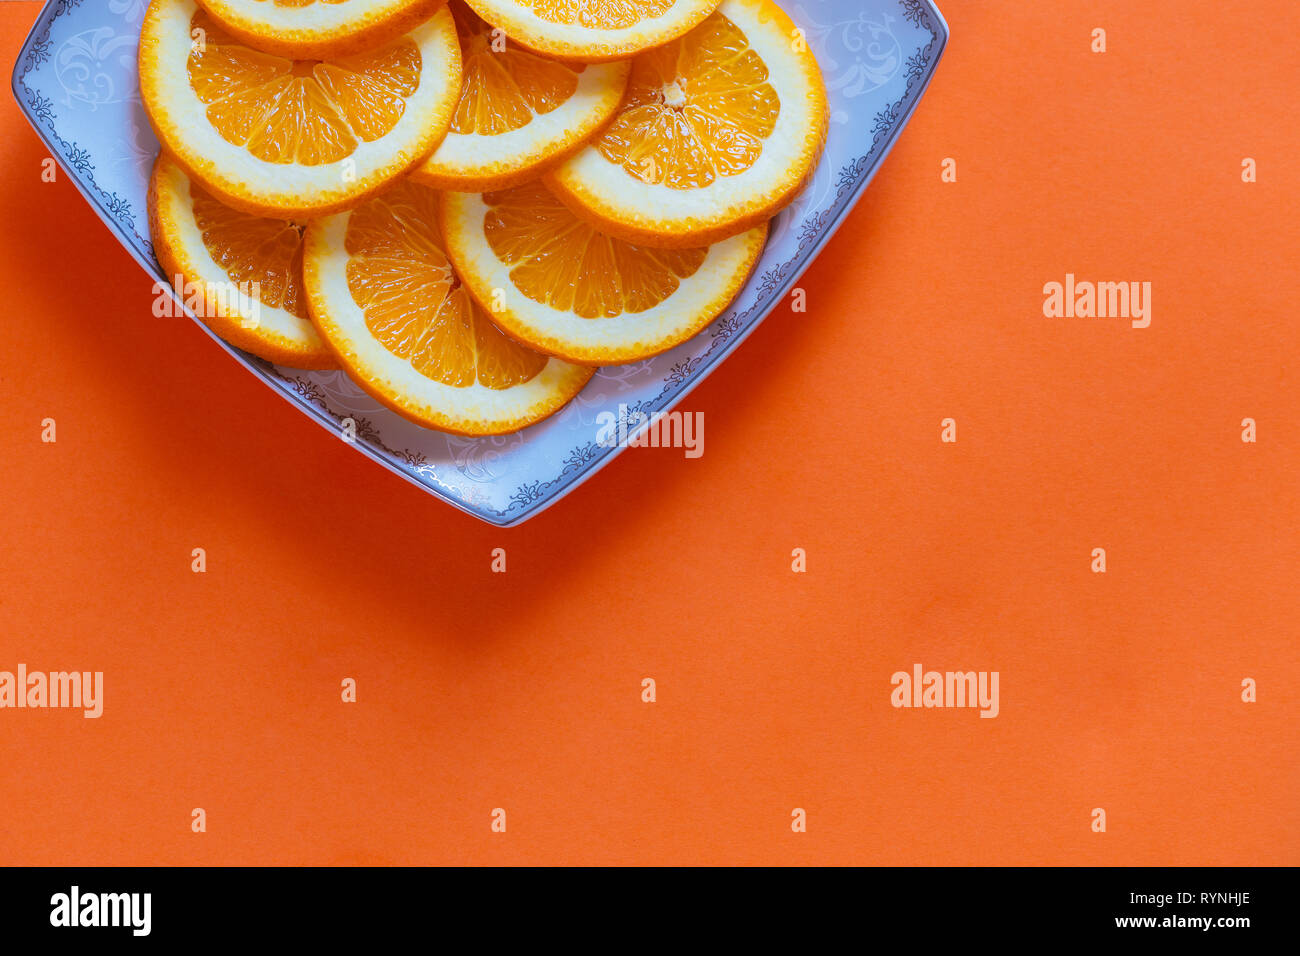 Sliced oranges on a orange background Stock Photo